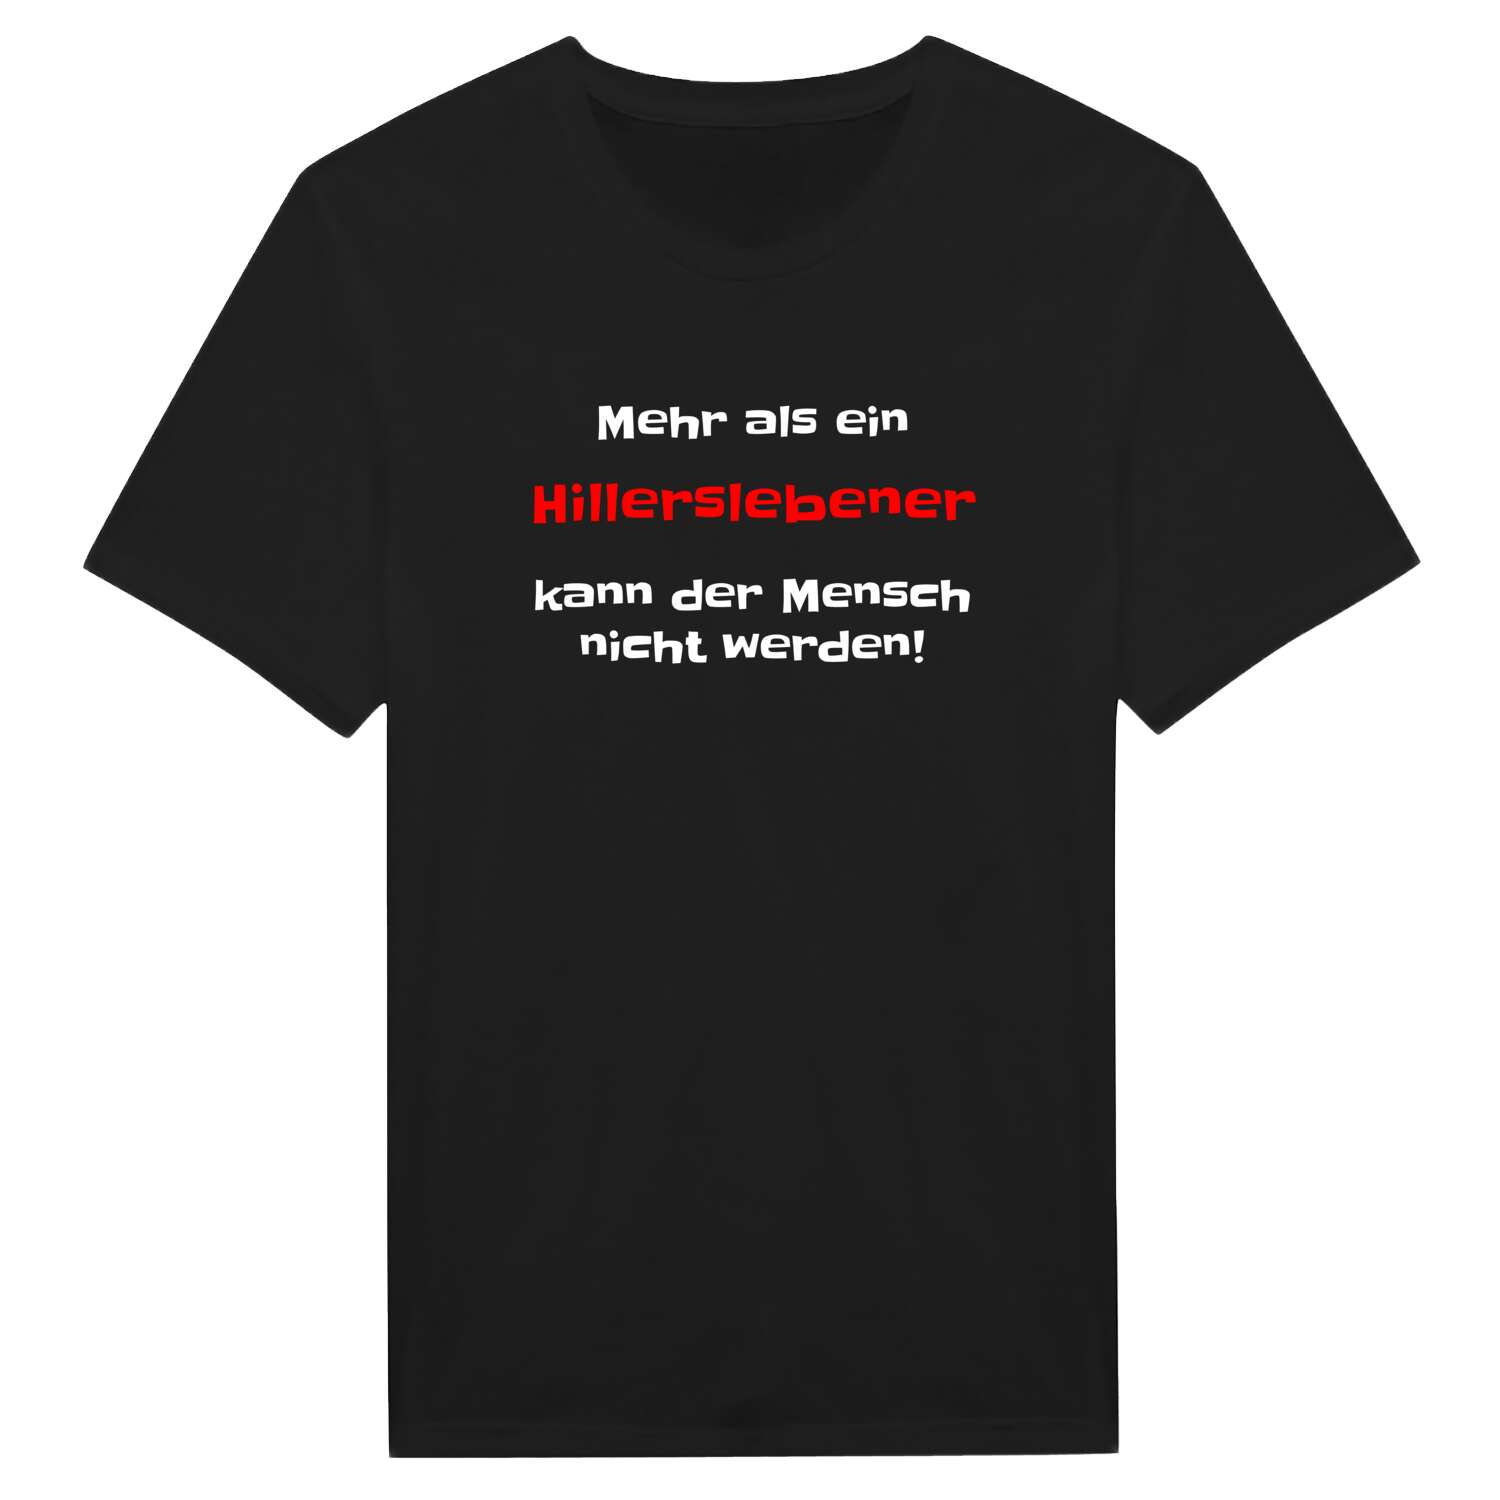 Hillersleben T-Shirt »Mehr als ein«